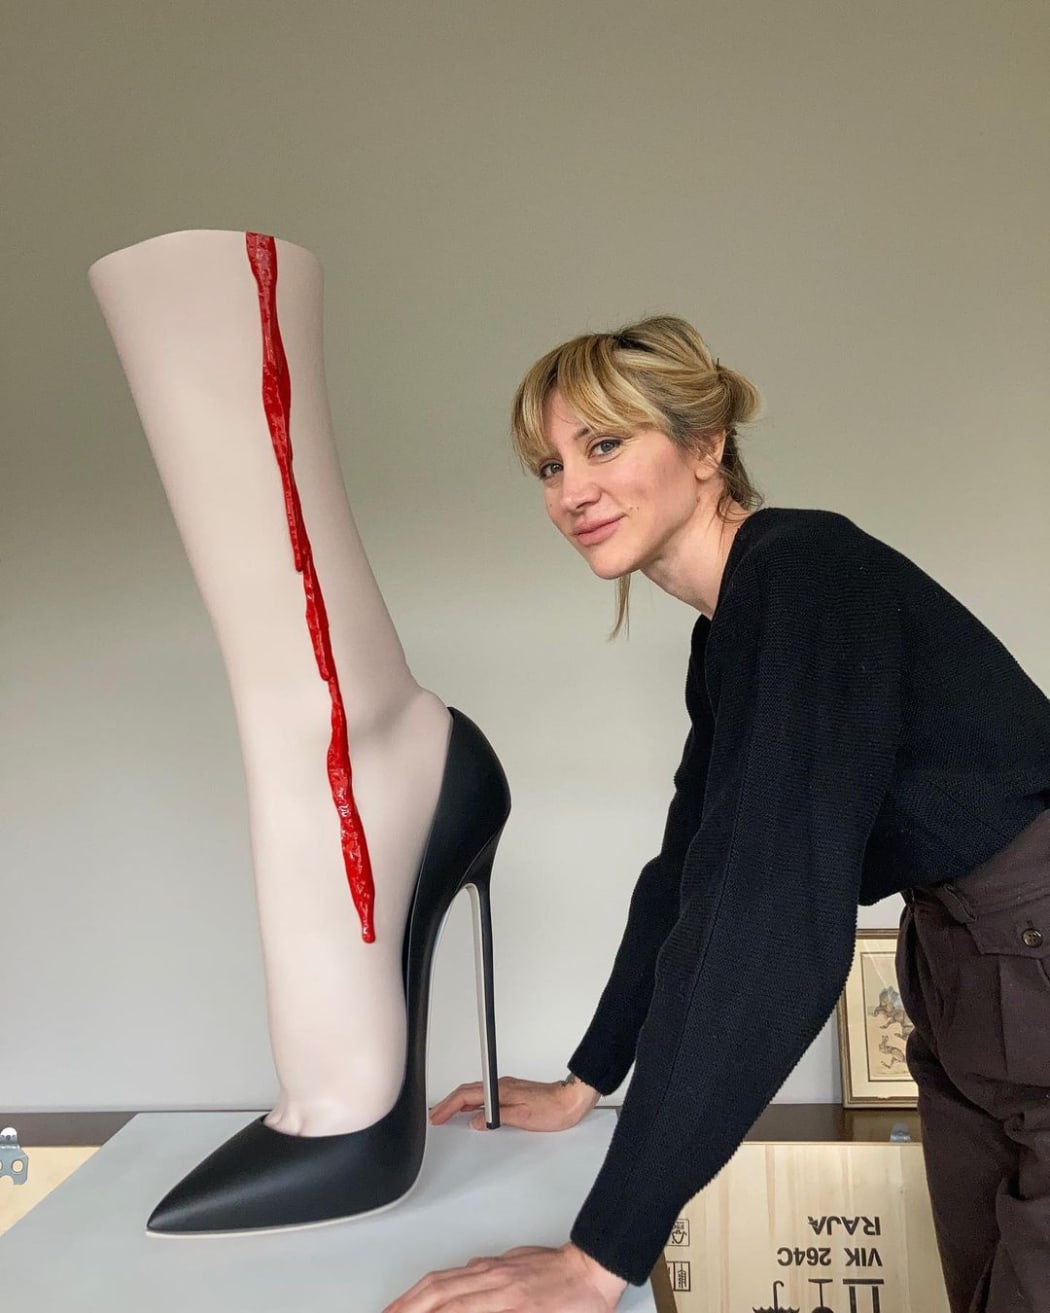 Monica Piloni em seu estúdio. Imagem do instagram da artista